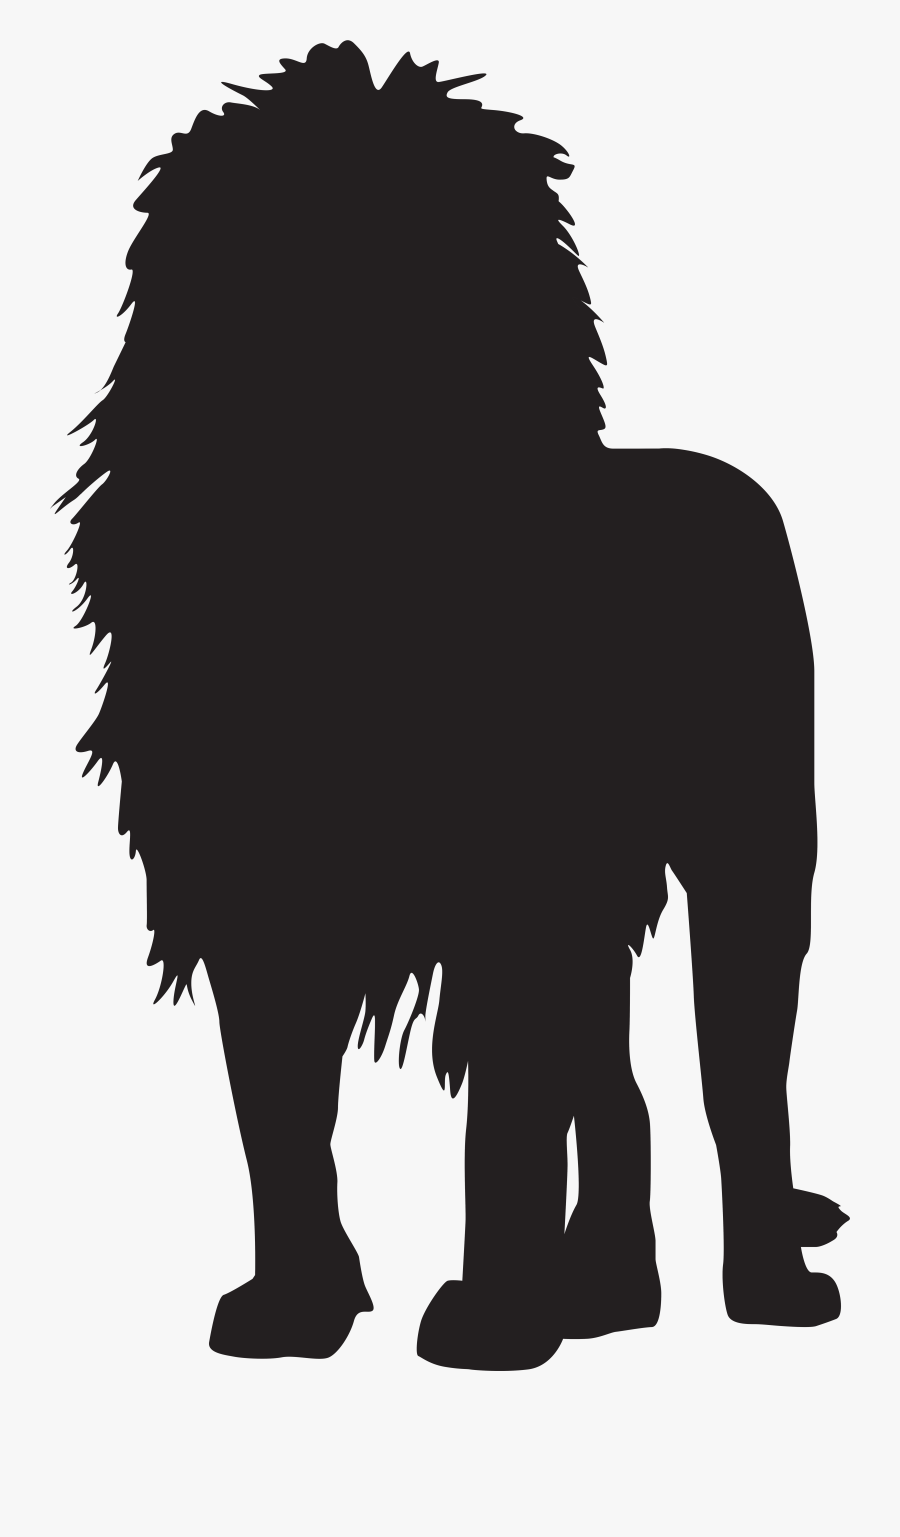 Lion Silhouette Scalable Vector Graphics Clip Art - Lion Silhouette Png, Transparent Clipart